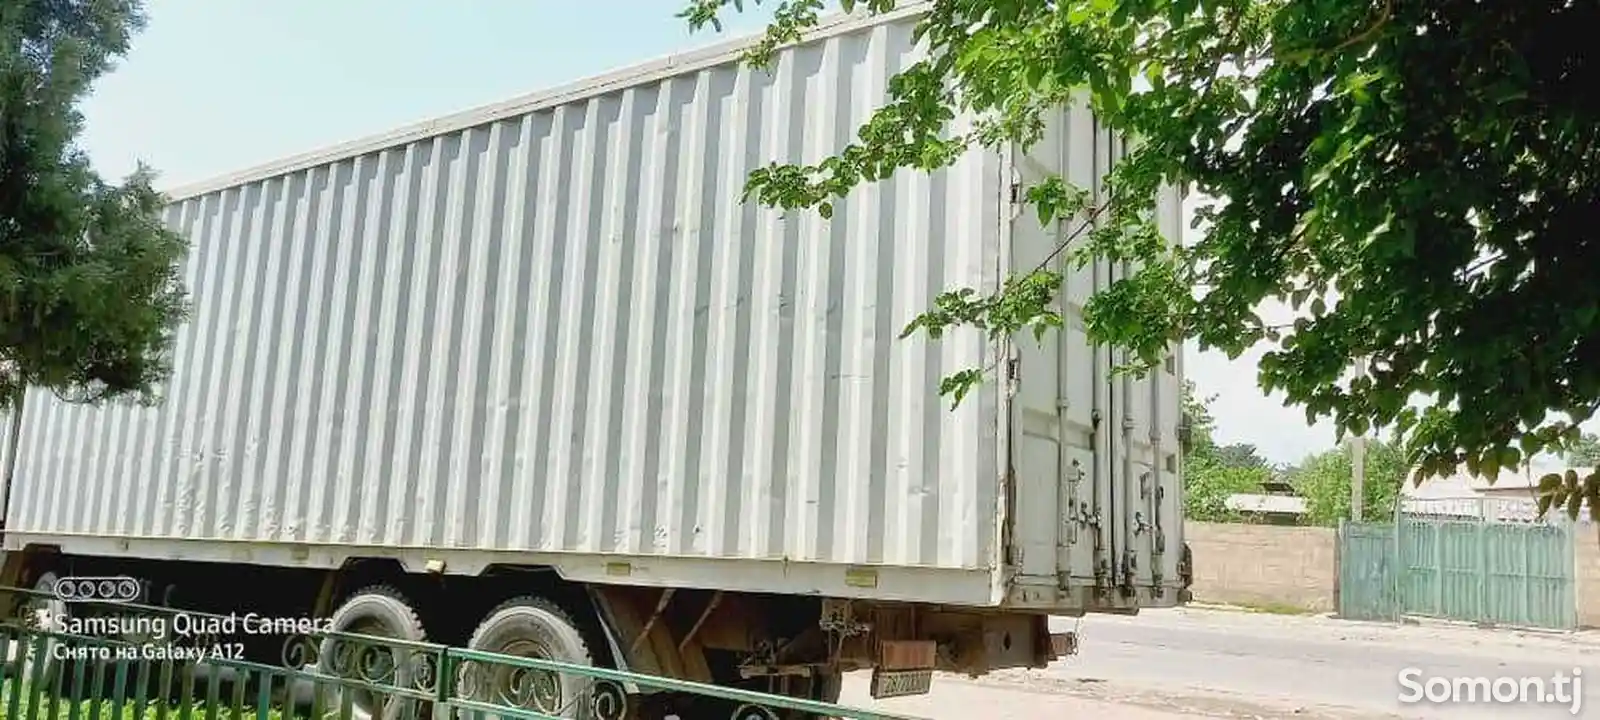 Бортовой грузовик Shacman, 2012-2